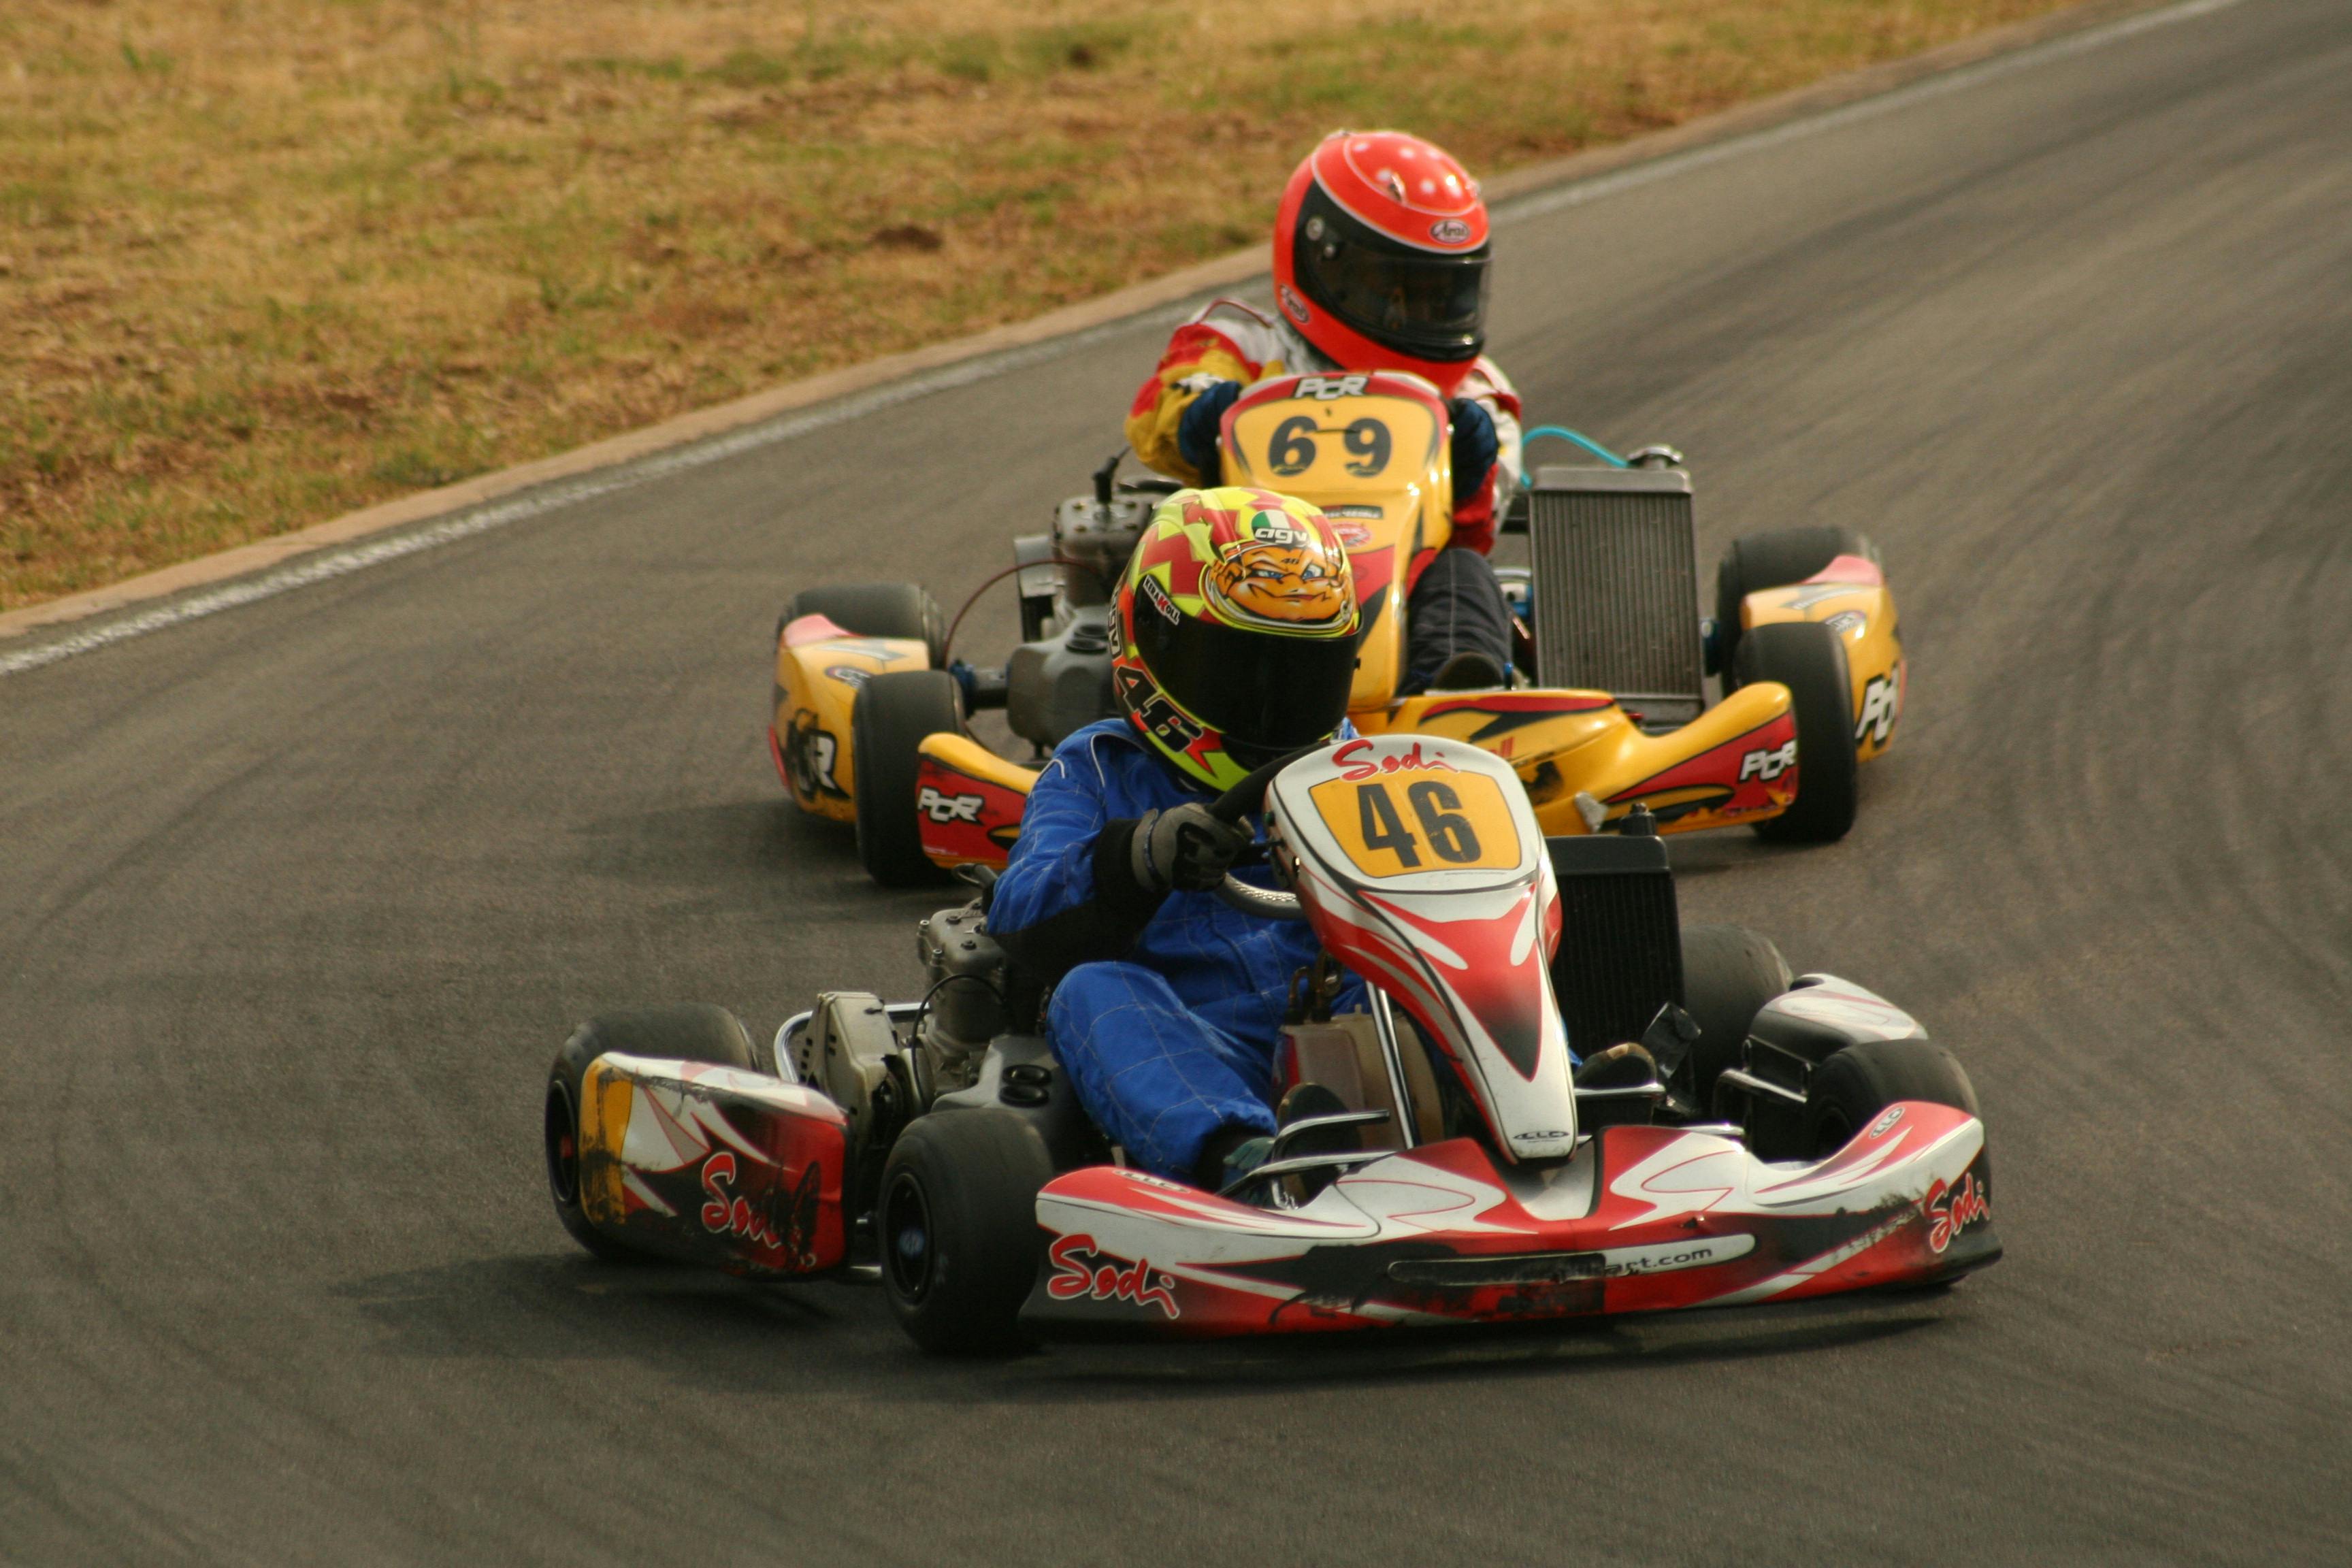 Racing Suit With Helmet Riding Go Kart